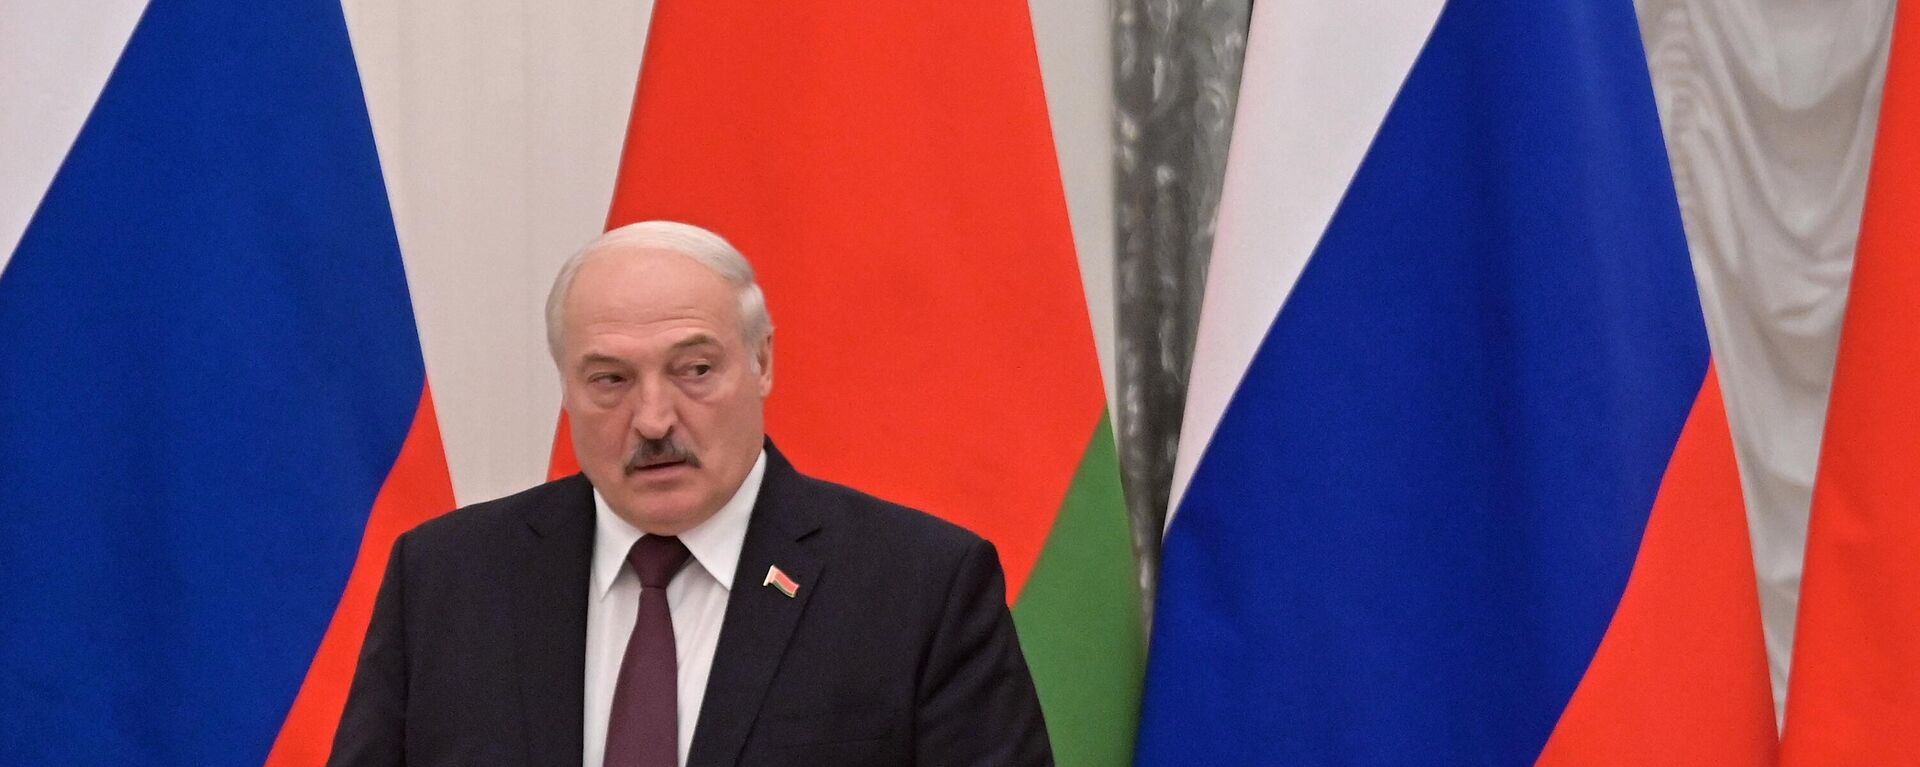 Predsednik Belorusije Aleksandar Lukašenko - Sputnik Srbija, 1920, 30.11.2021